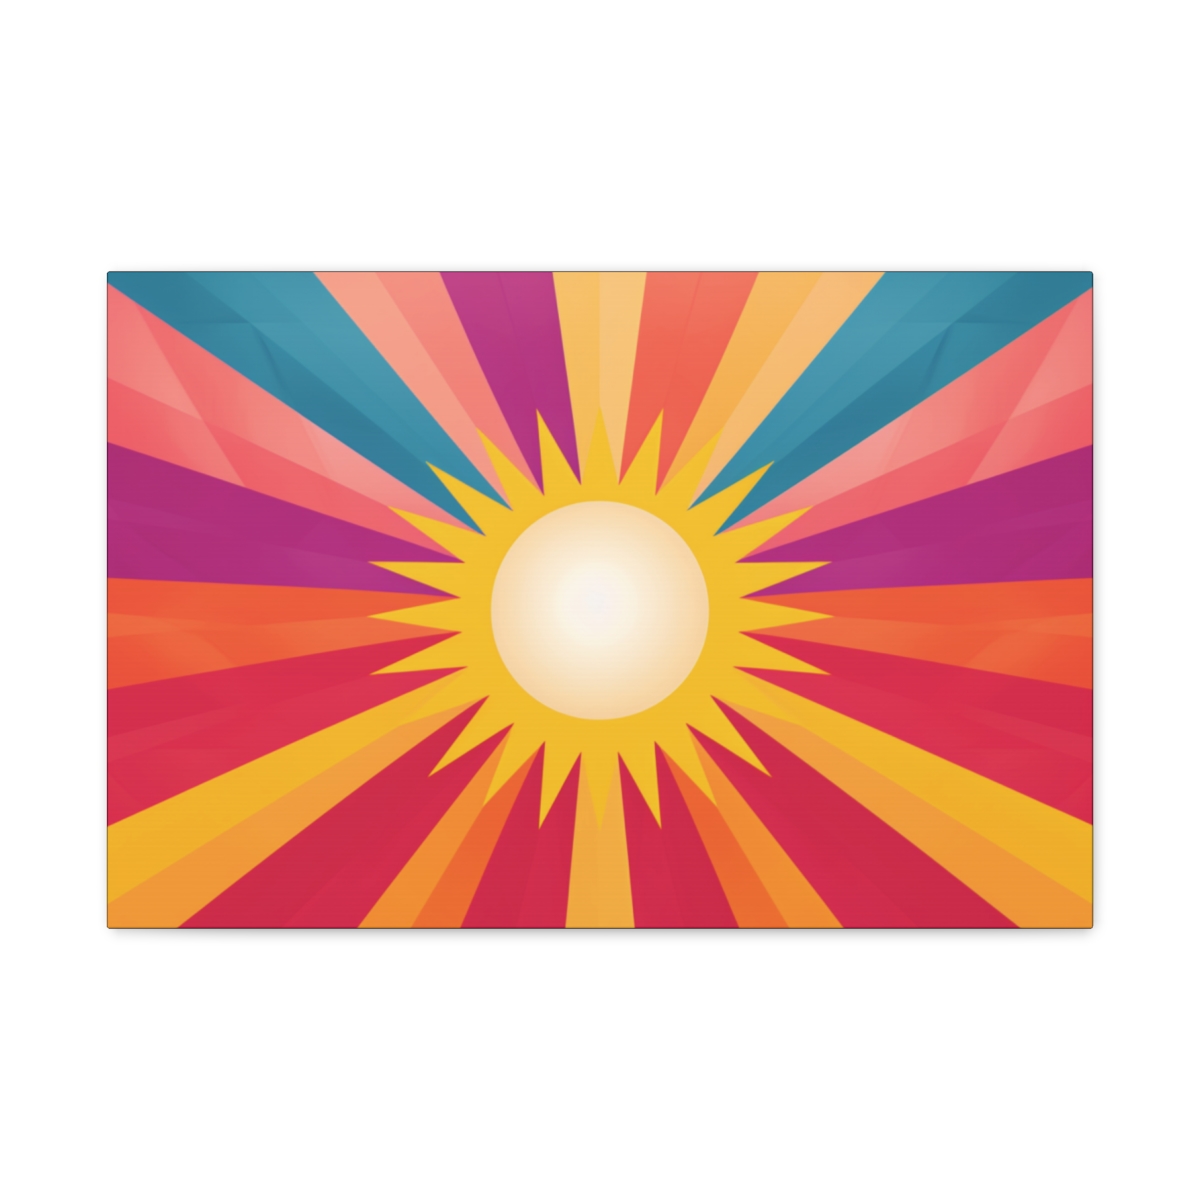 Trippy Sun Art: Spectral Sol